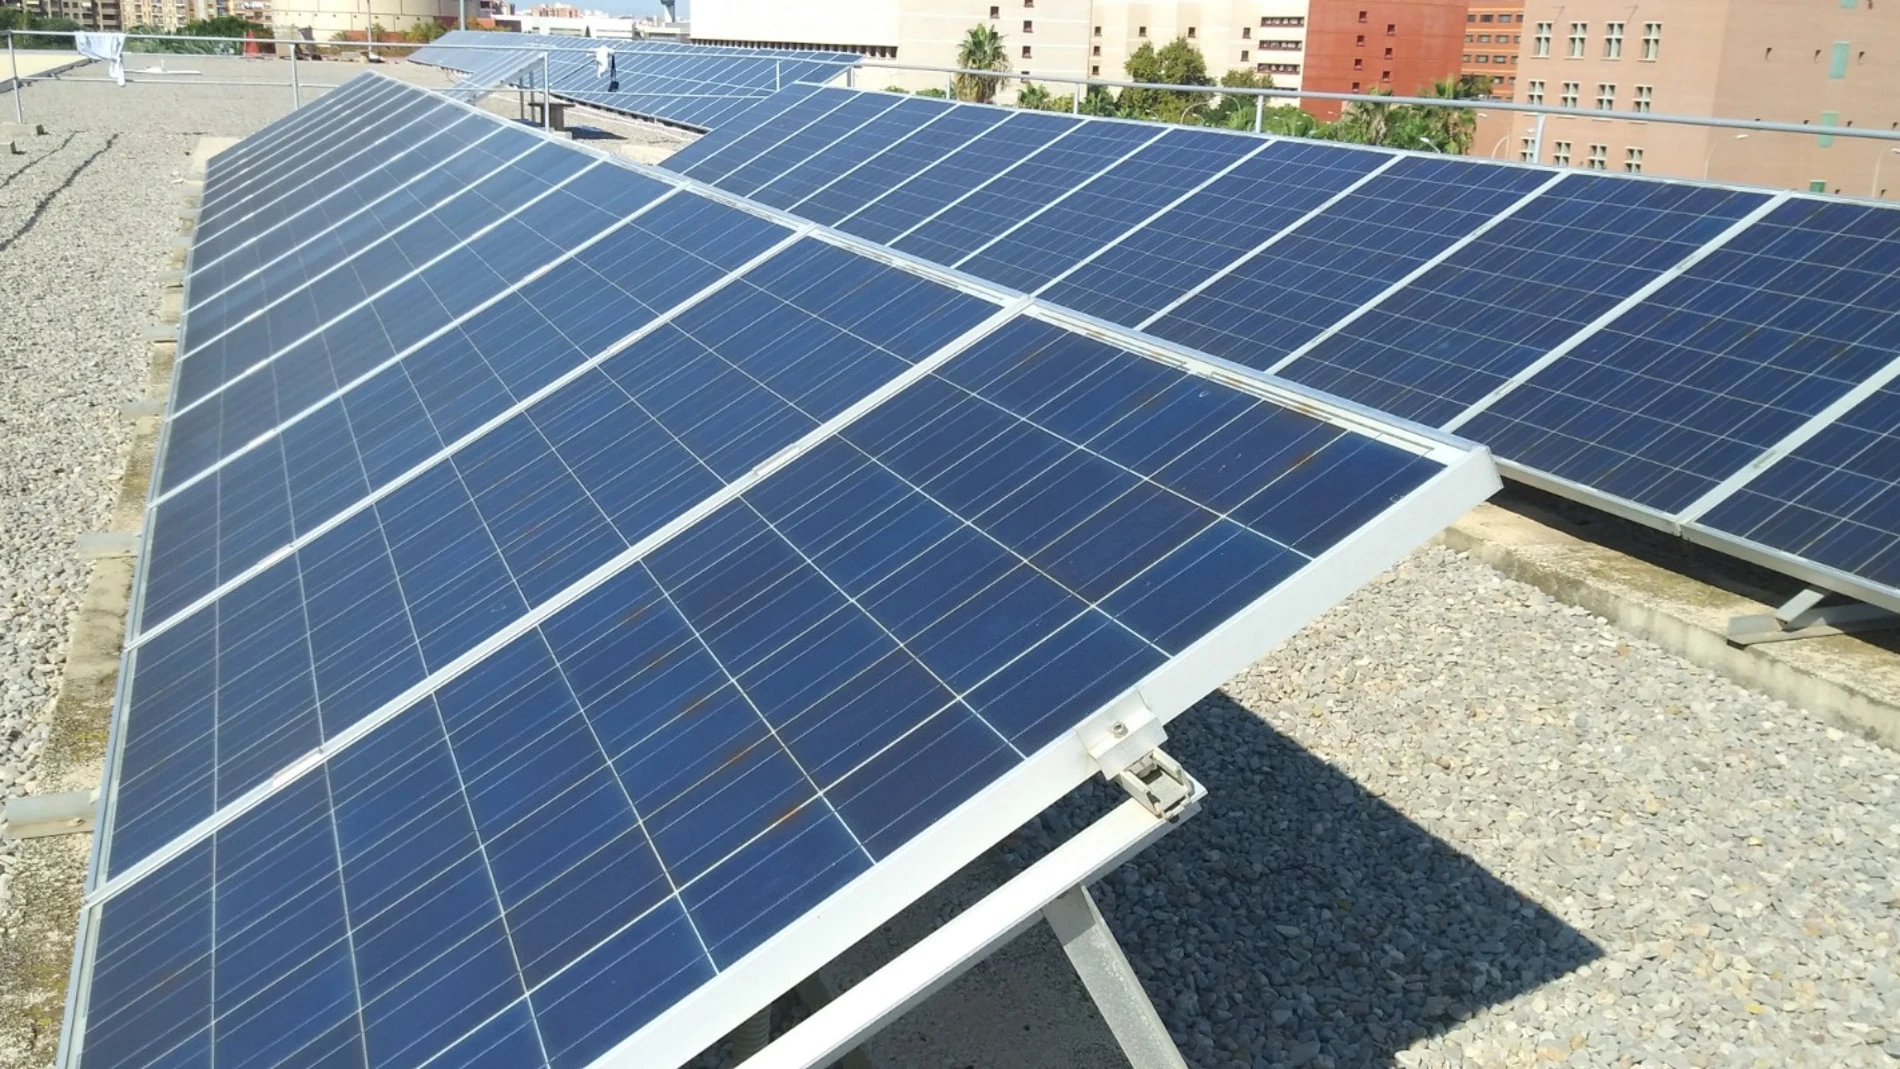 Planta fotovoltaica instalada en la cubierta de un edificio